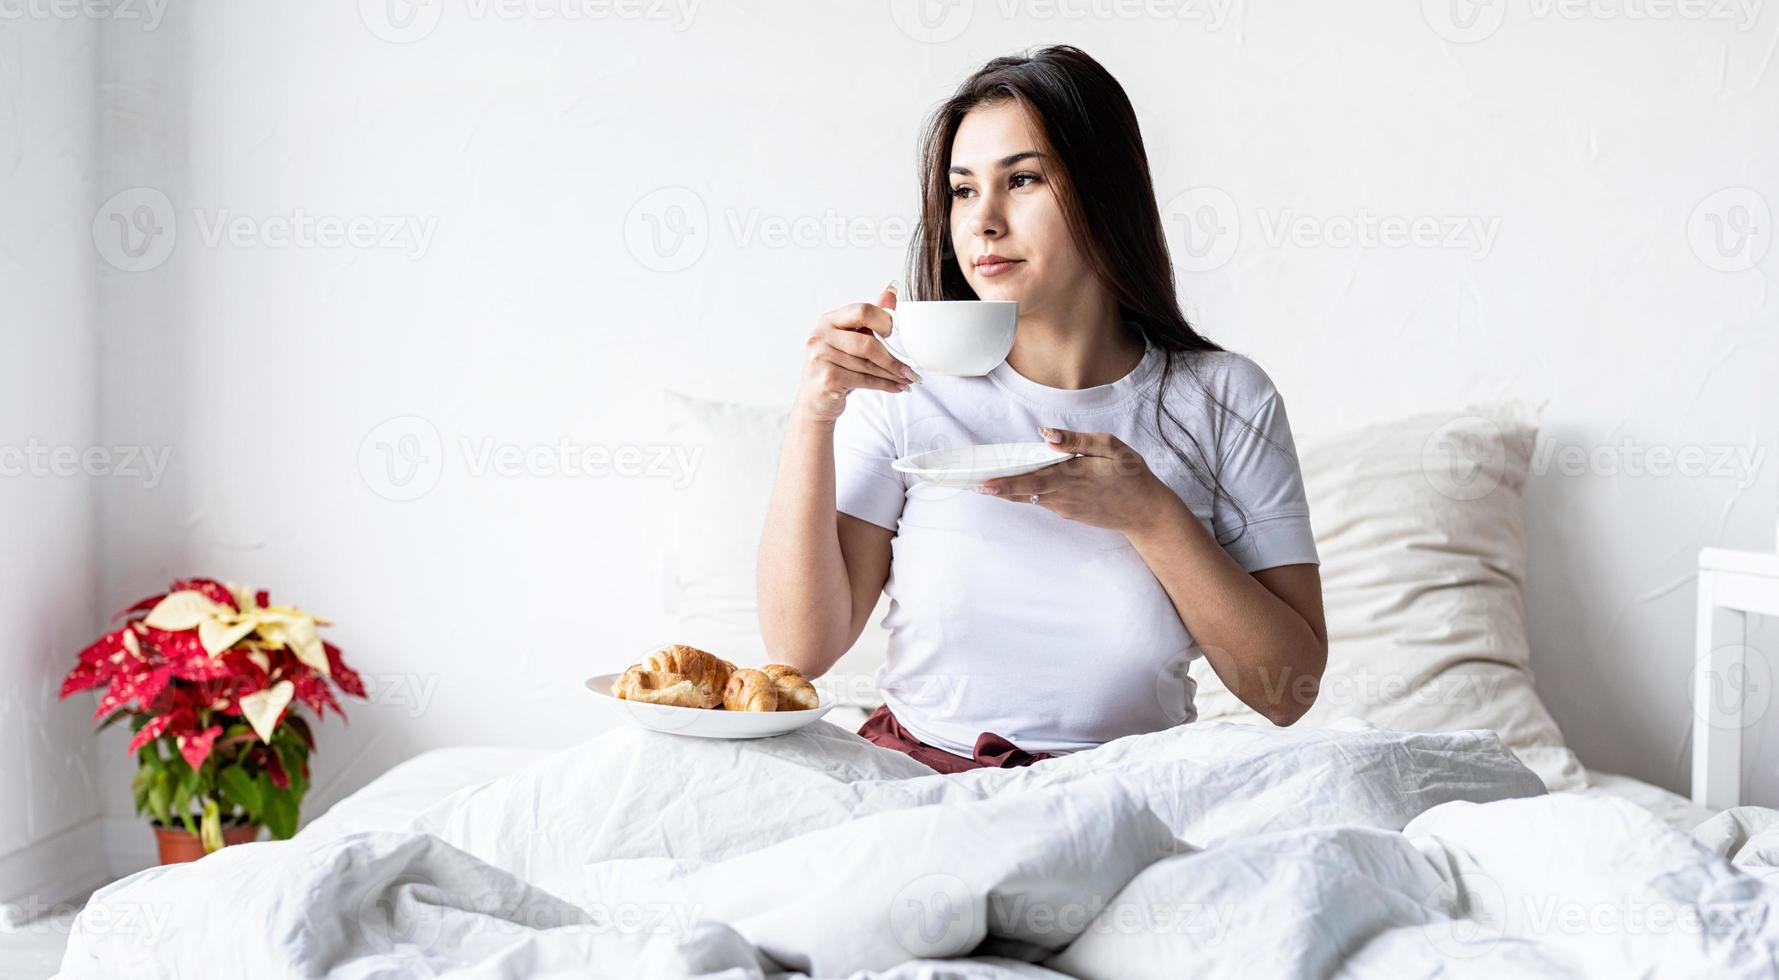 jovem morena sentada acordada na cama com balões em forma de coração vermelho e decorações, bebendo café comendo croissants foto